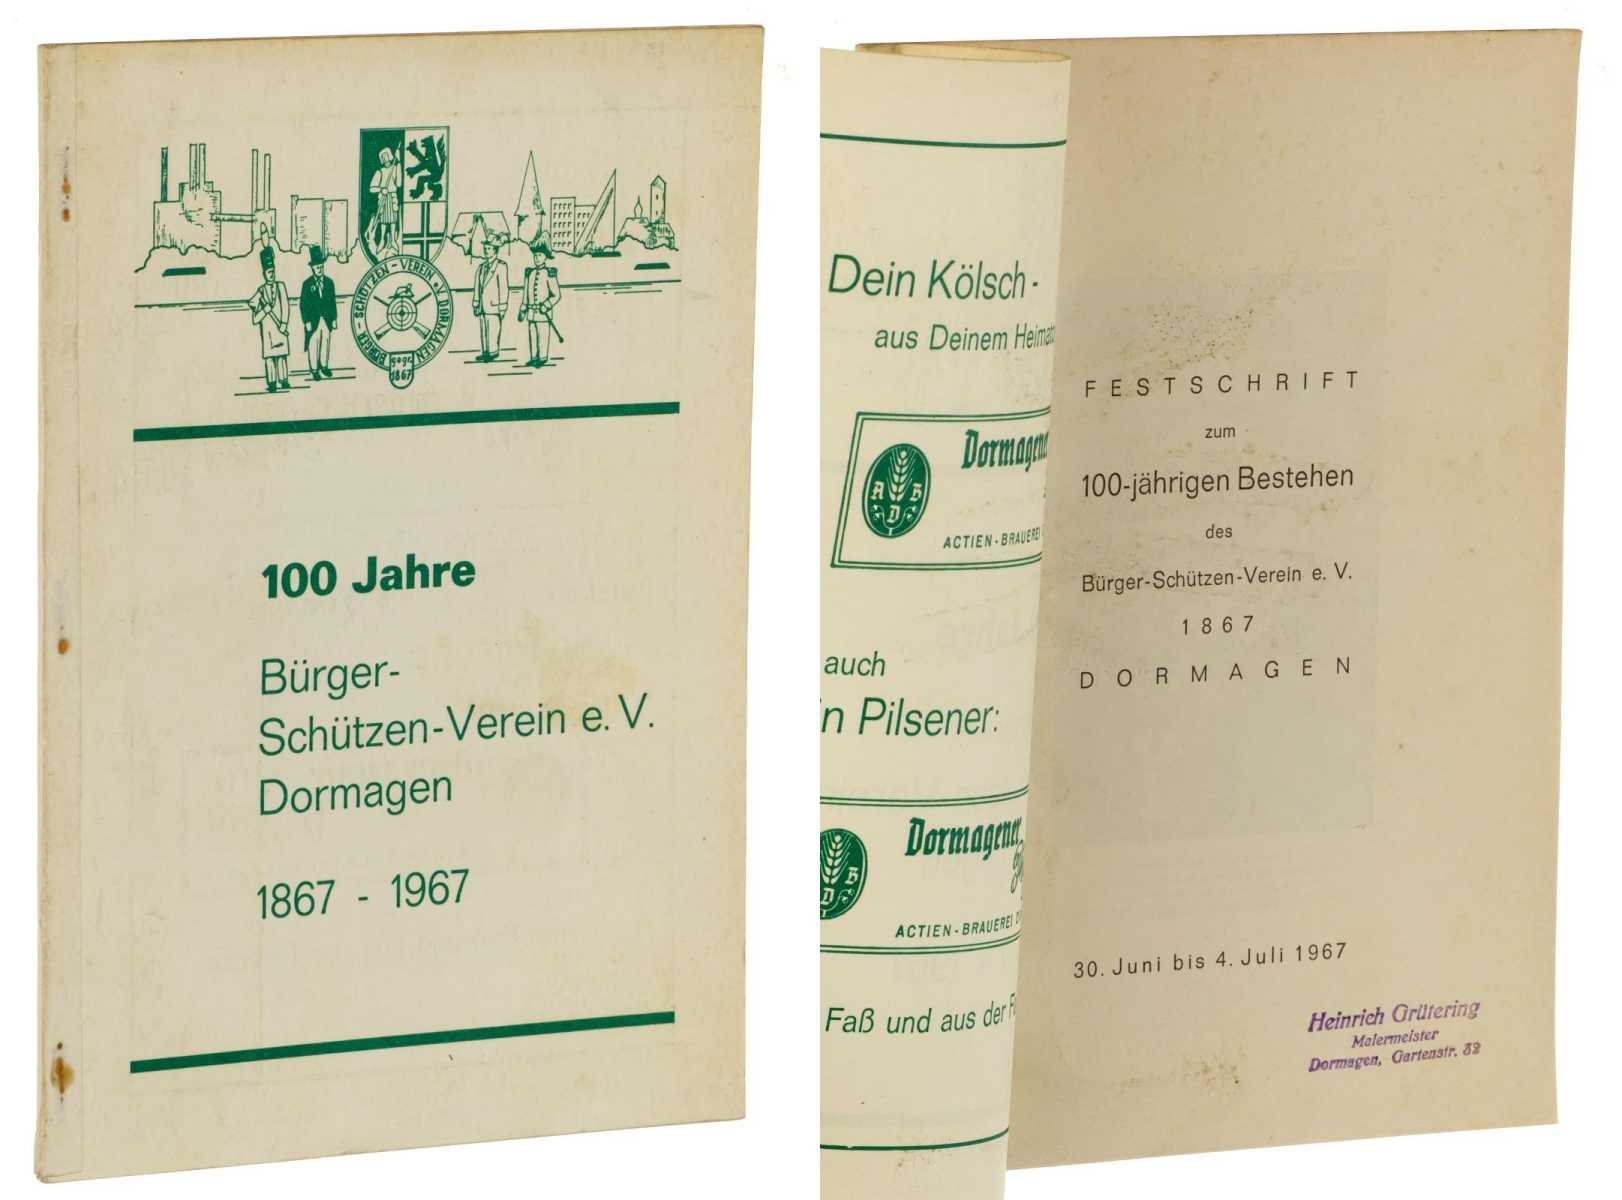   Festschrift zum 100-jährigen Bestehen des Bürger-Schützen-Verein e.V. 1867 Dormagen. [100 Jahre 1867-1967]. 